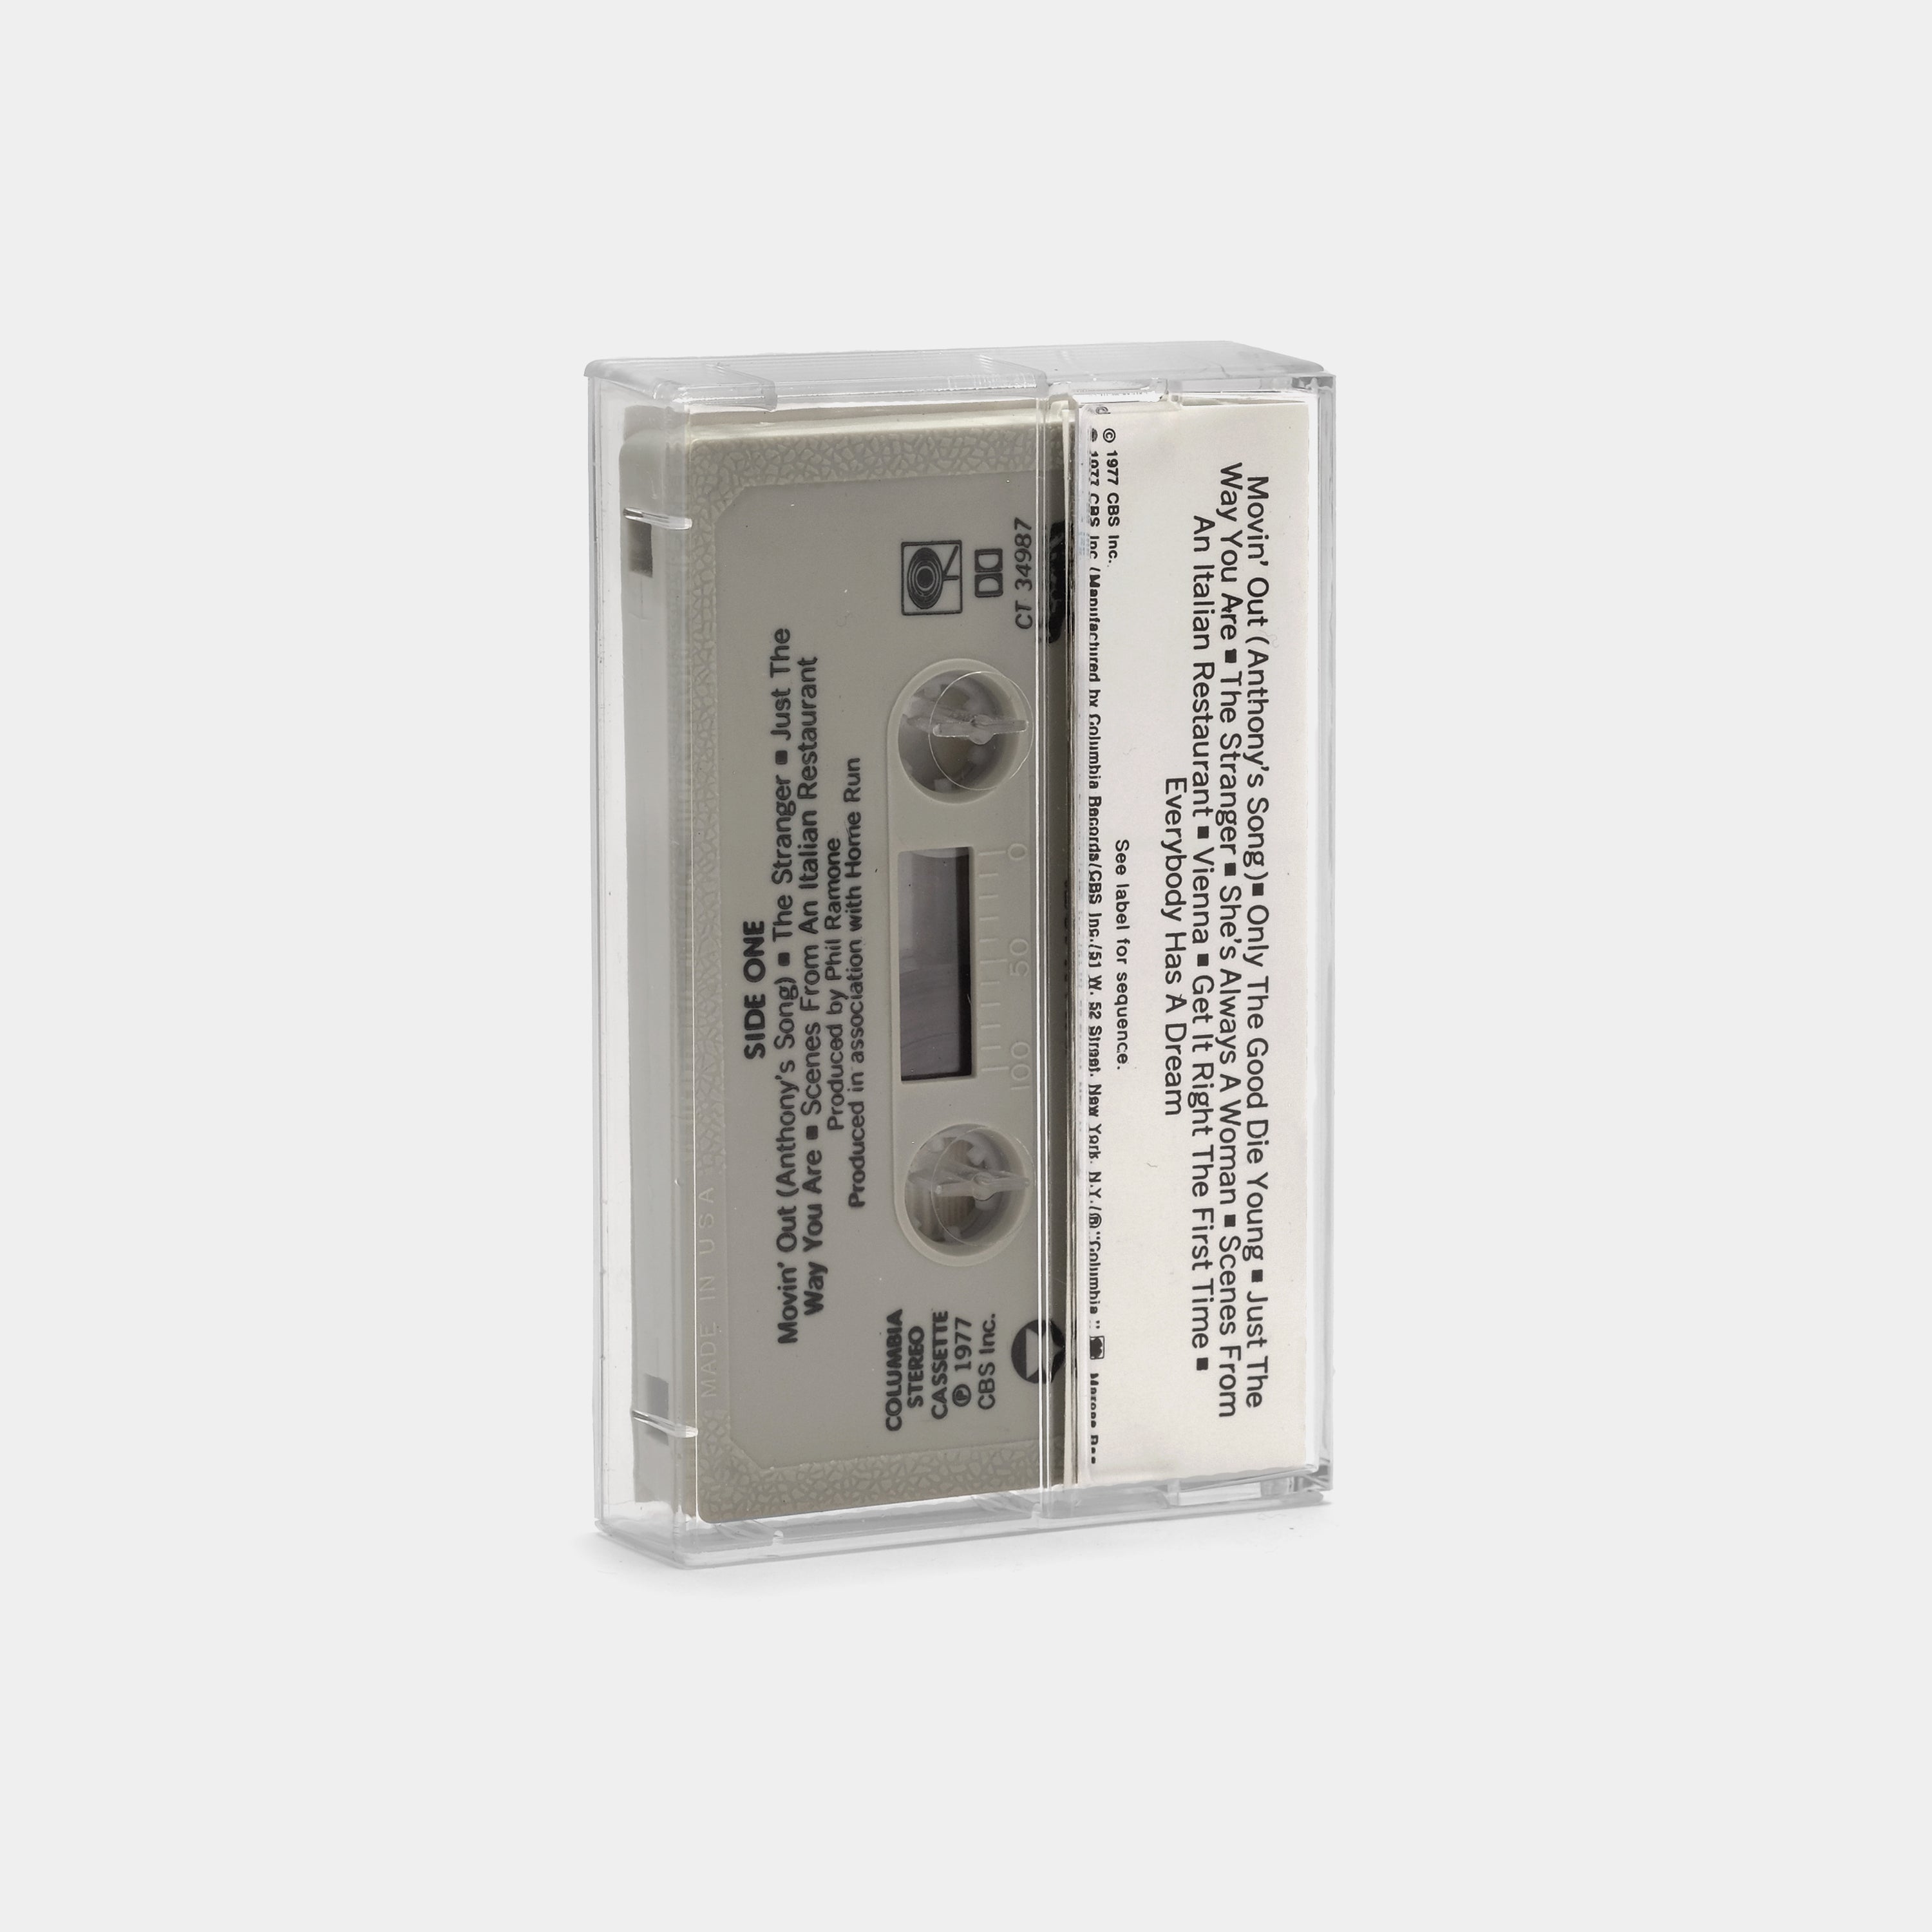 Billy Joel - The Stranger Cassette Tape